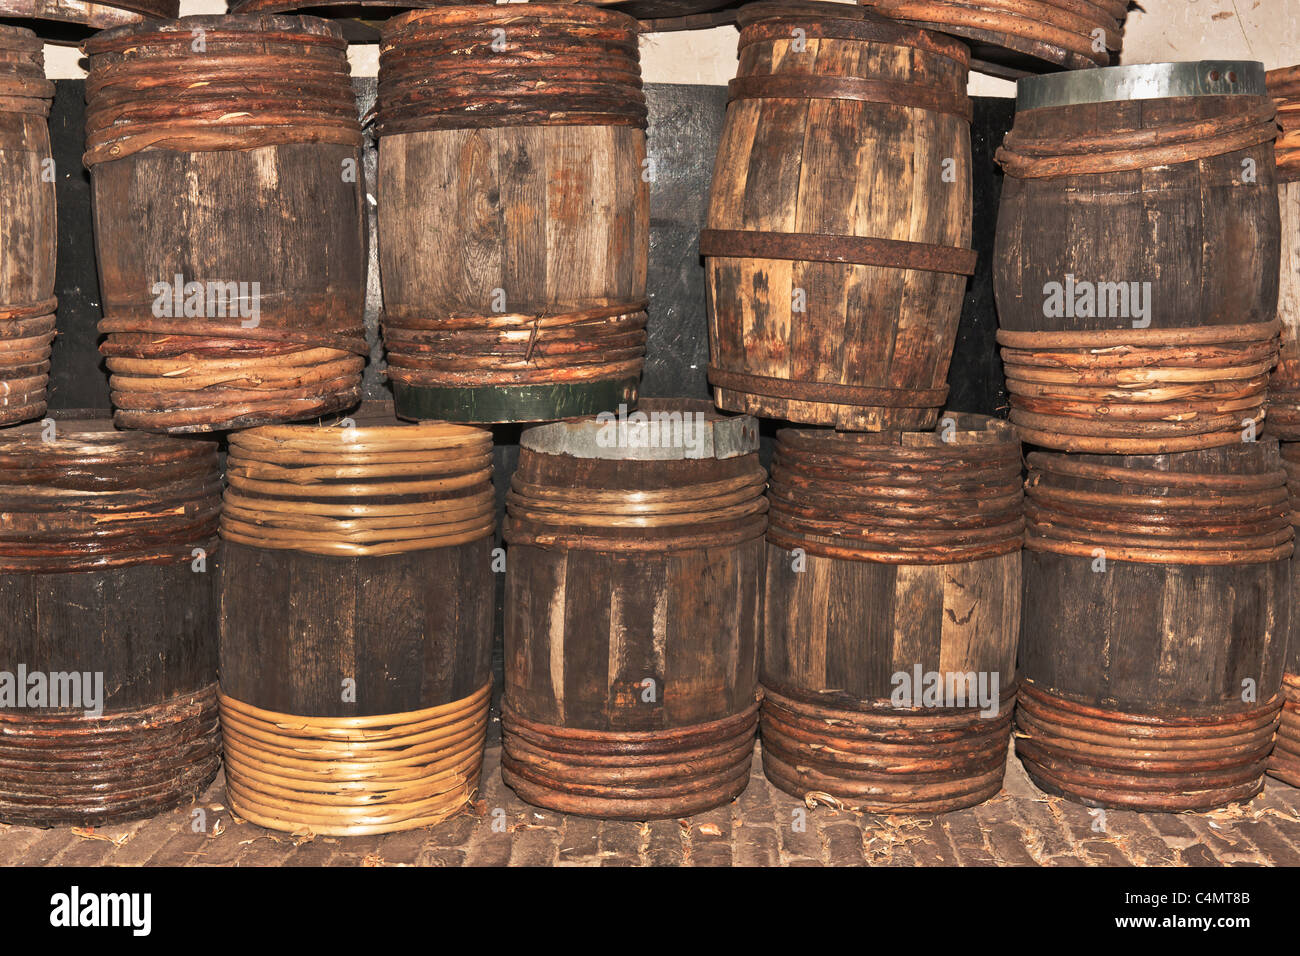 Viele verschiedene Fässer aus Holz liegen nebeneinander | Many different wooden barrels are next to each other Stock Photo